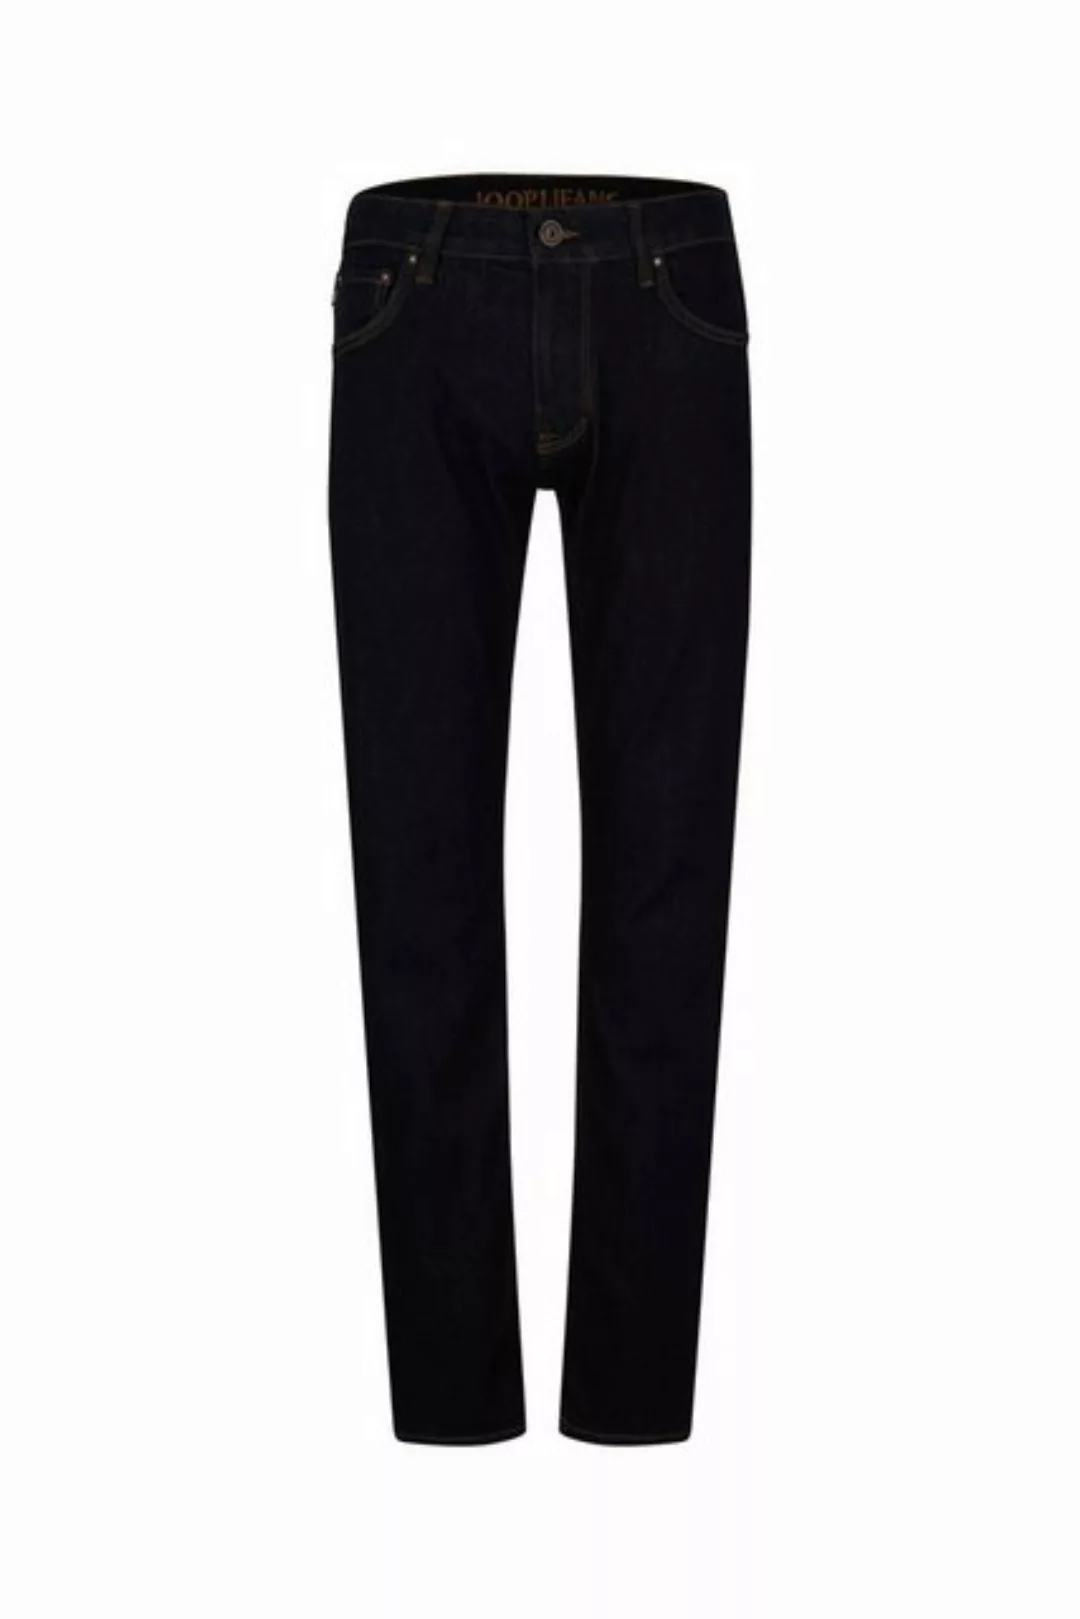 Joop Jeans Slim-fit-Jeans 15 Stephen_NOS 10014508 02 günstig online kaufen